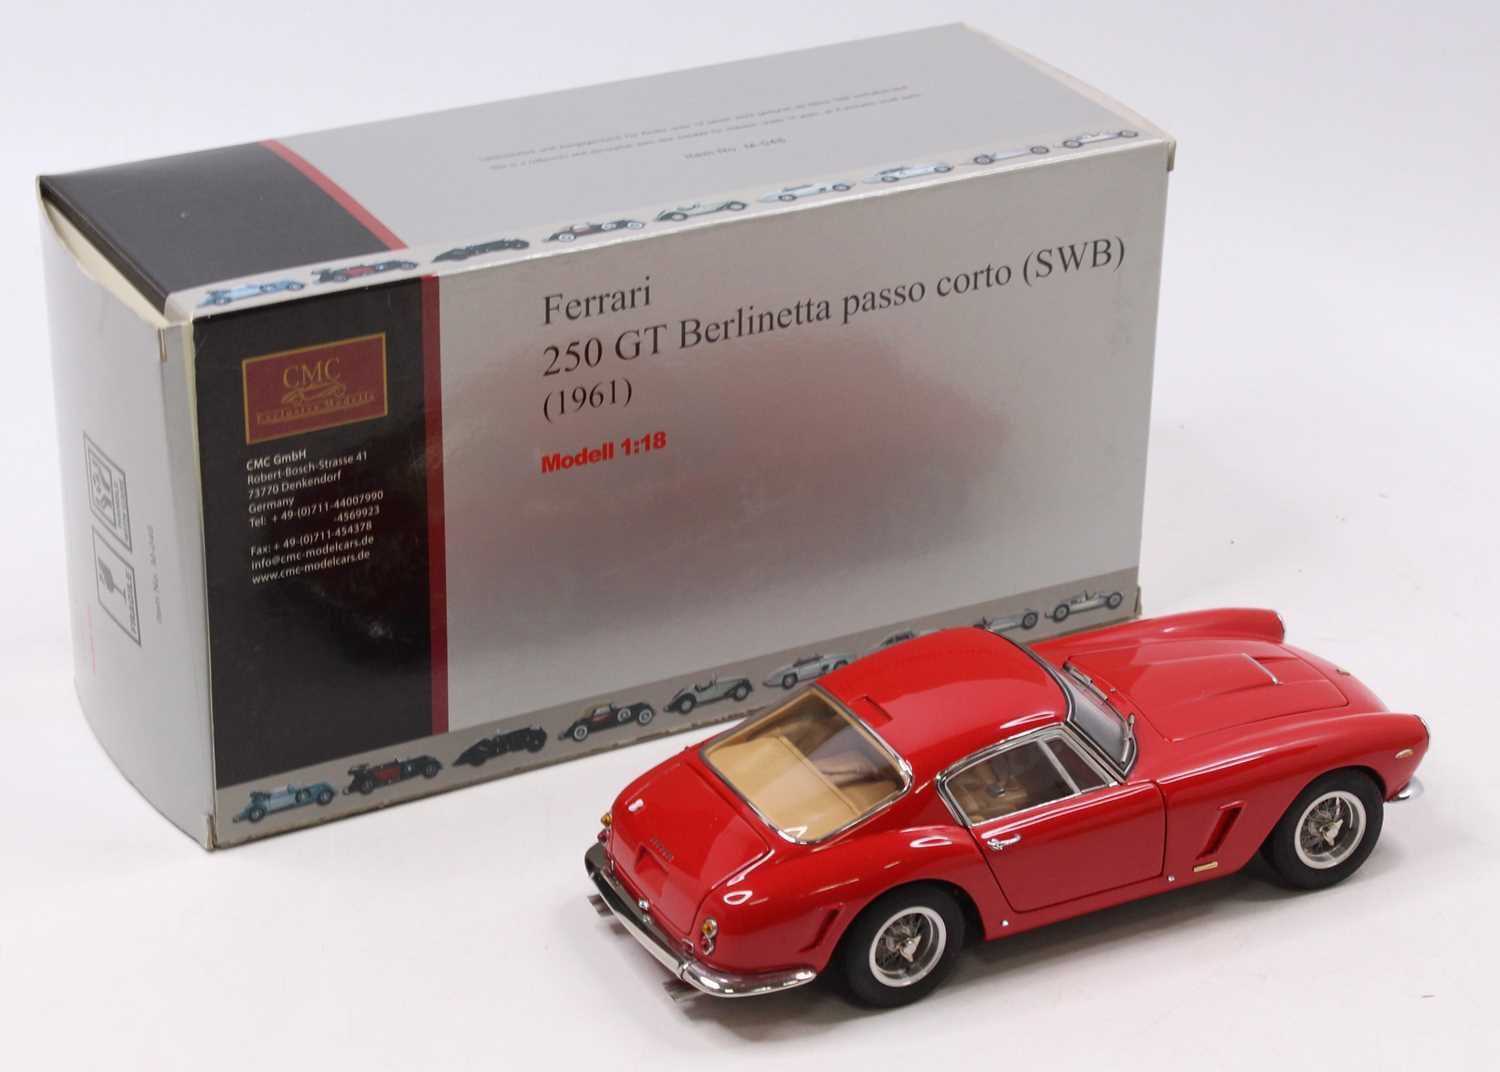 A CMC Exclusive Models No. M-46 1/18 scale model 1961 Ferrari 250 GT Berlinetta Passo Corto (SWB), - Image 2 of 3